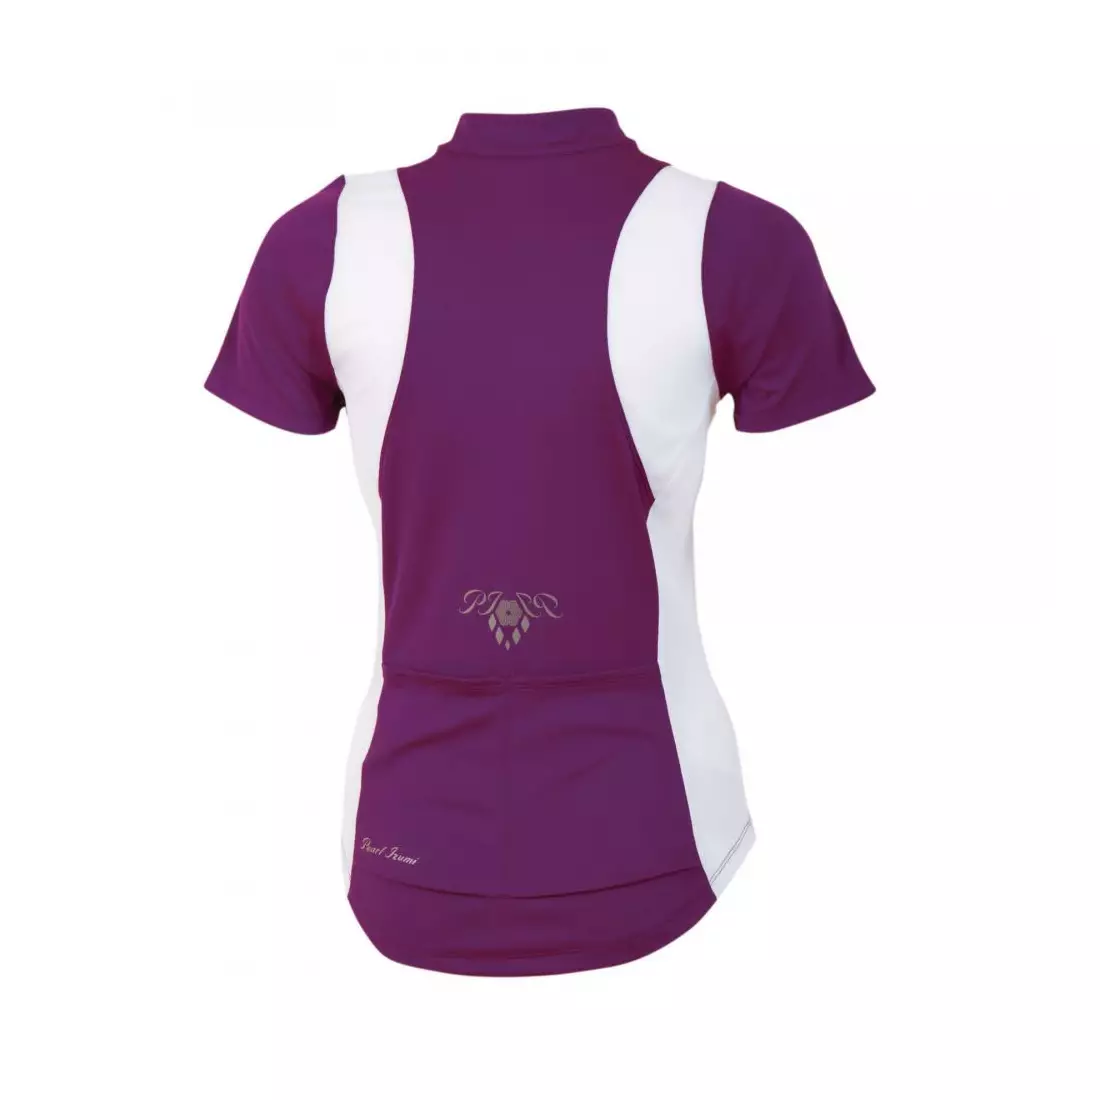 PEARL IZUMI - 11221316-3MV SELECT - women's cycling jersey, purple